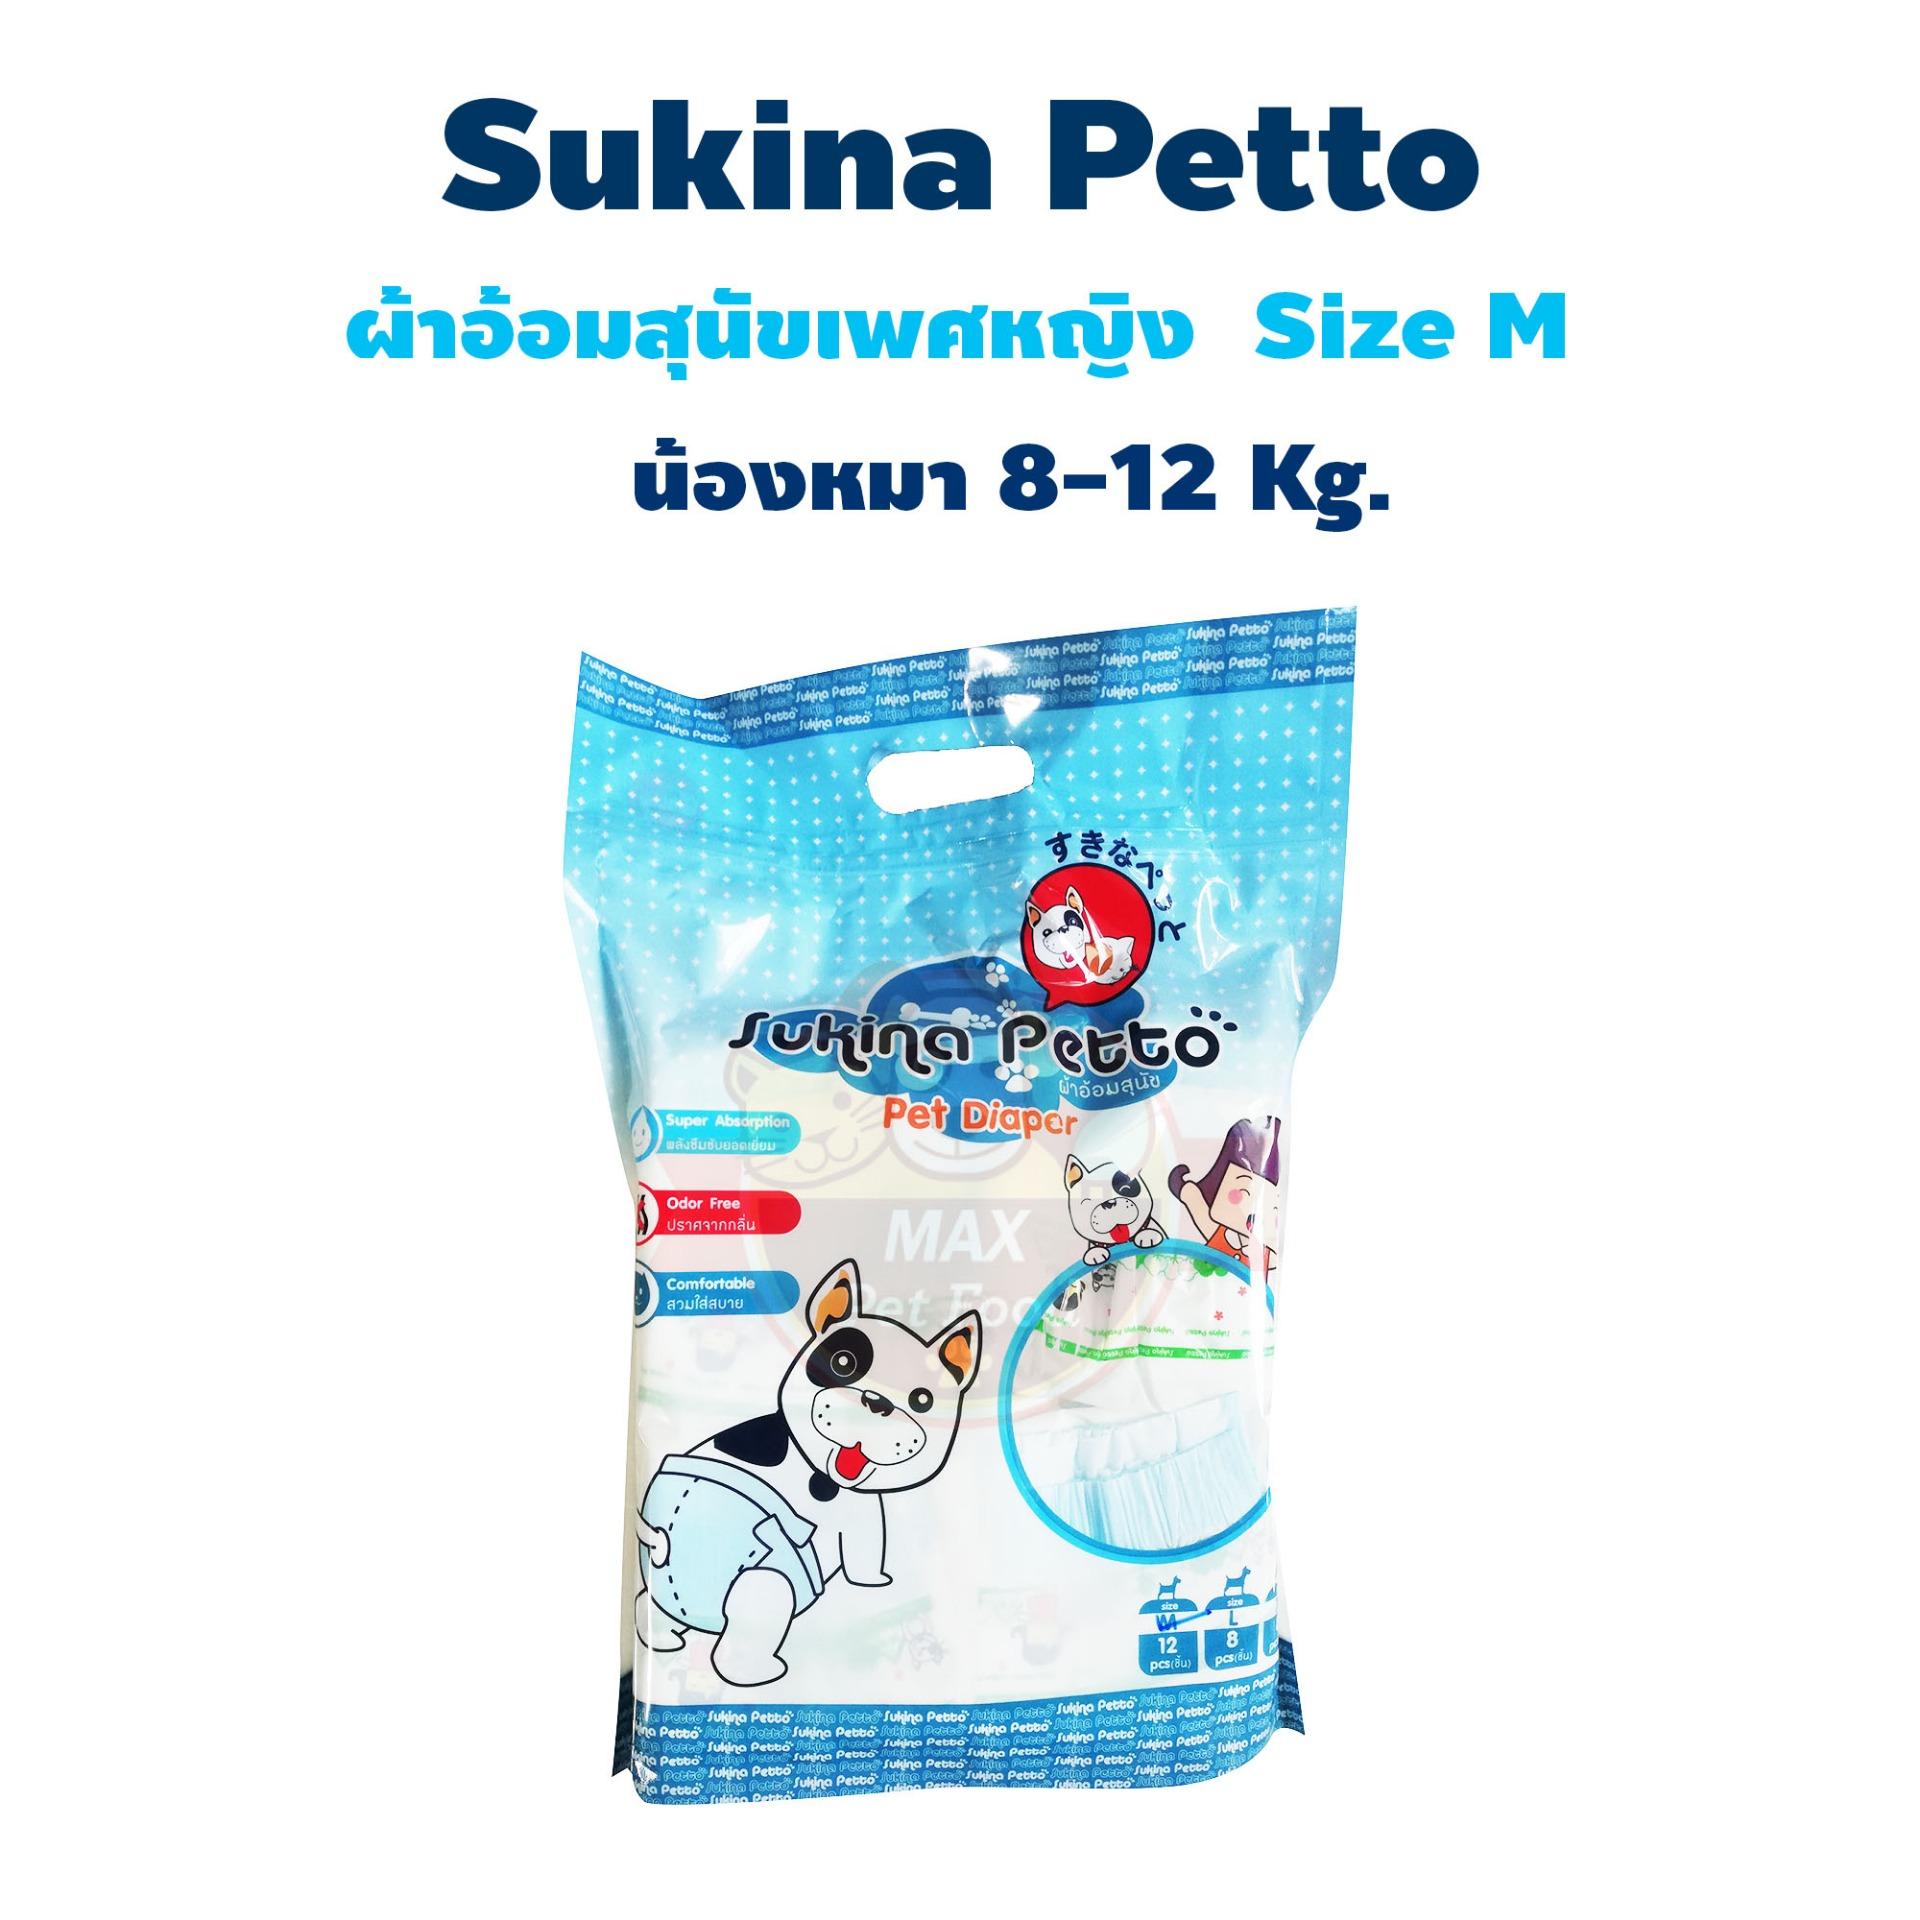 Sukina Petto ผ้าอ้อมสุนัข ฝึกขับถ่าย Size M สำหรับสุนัขน้ำหนัก 8-12 kg. รอบเอว 34-48 ซม. ความสูง 22 ซม. จำนวน (12 ชิ้น/ห่อ)  1 แพค